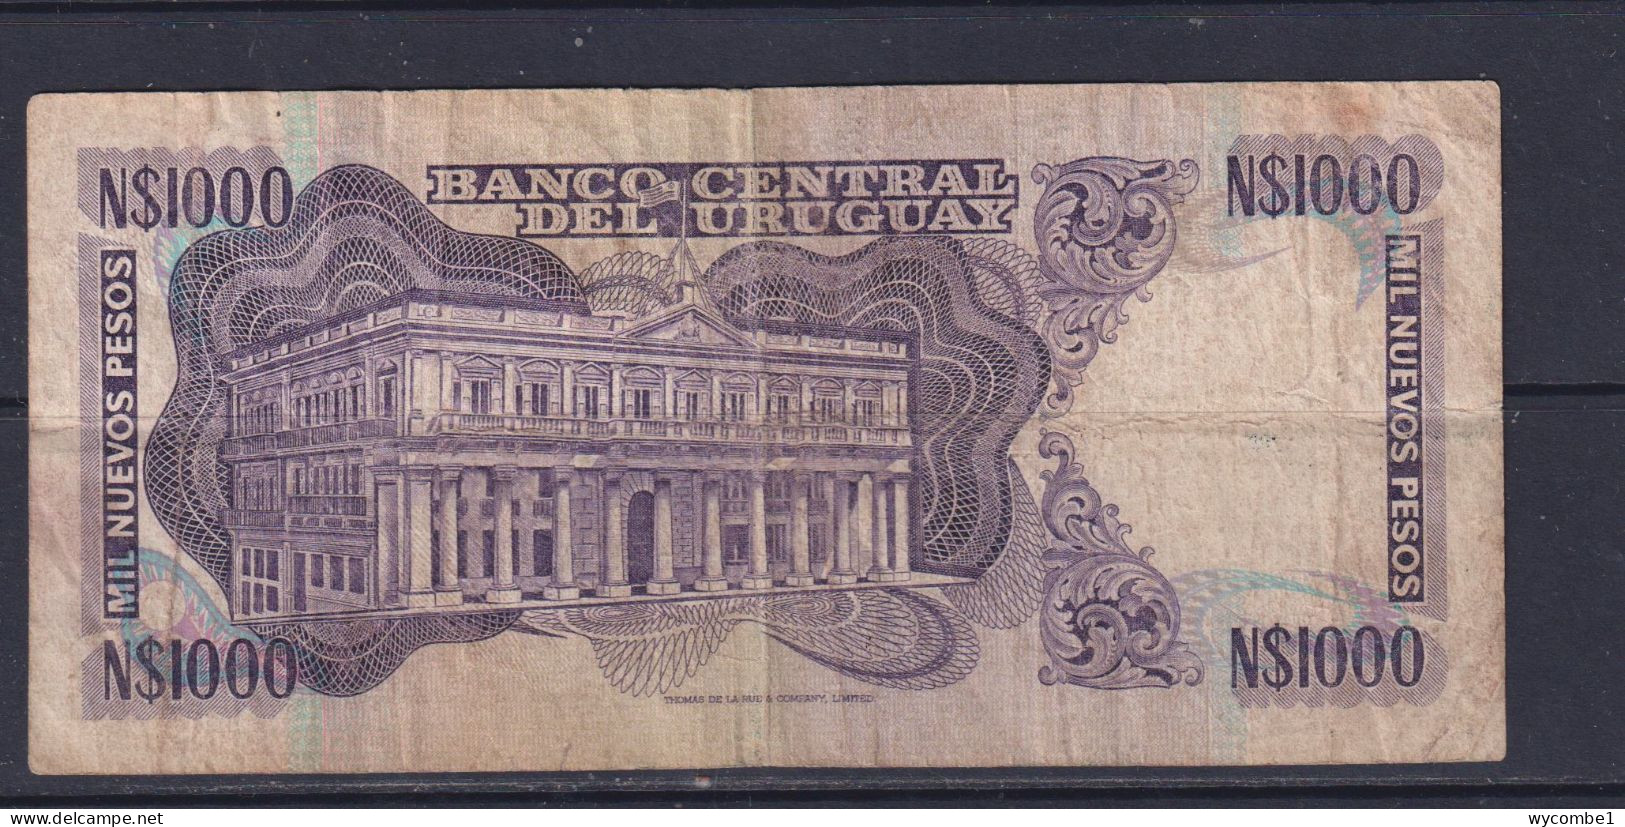 URUGUAY - 1992 1000 Pesos Circulated Banknote - Uruguay